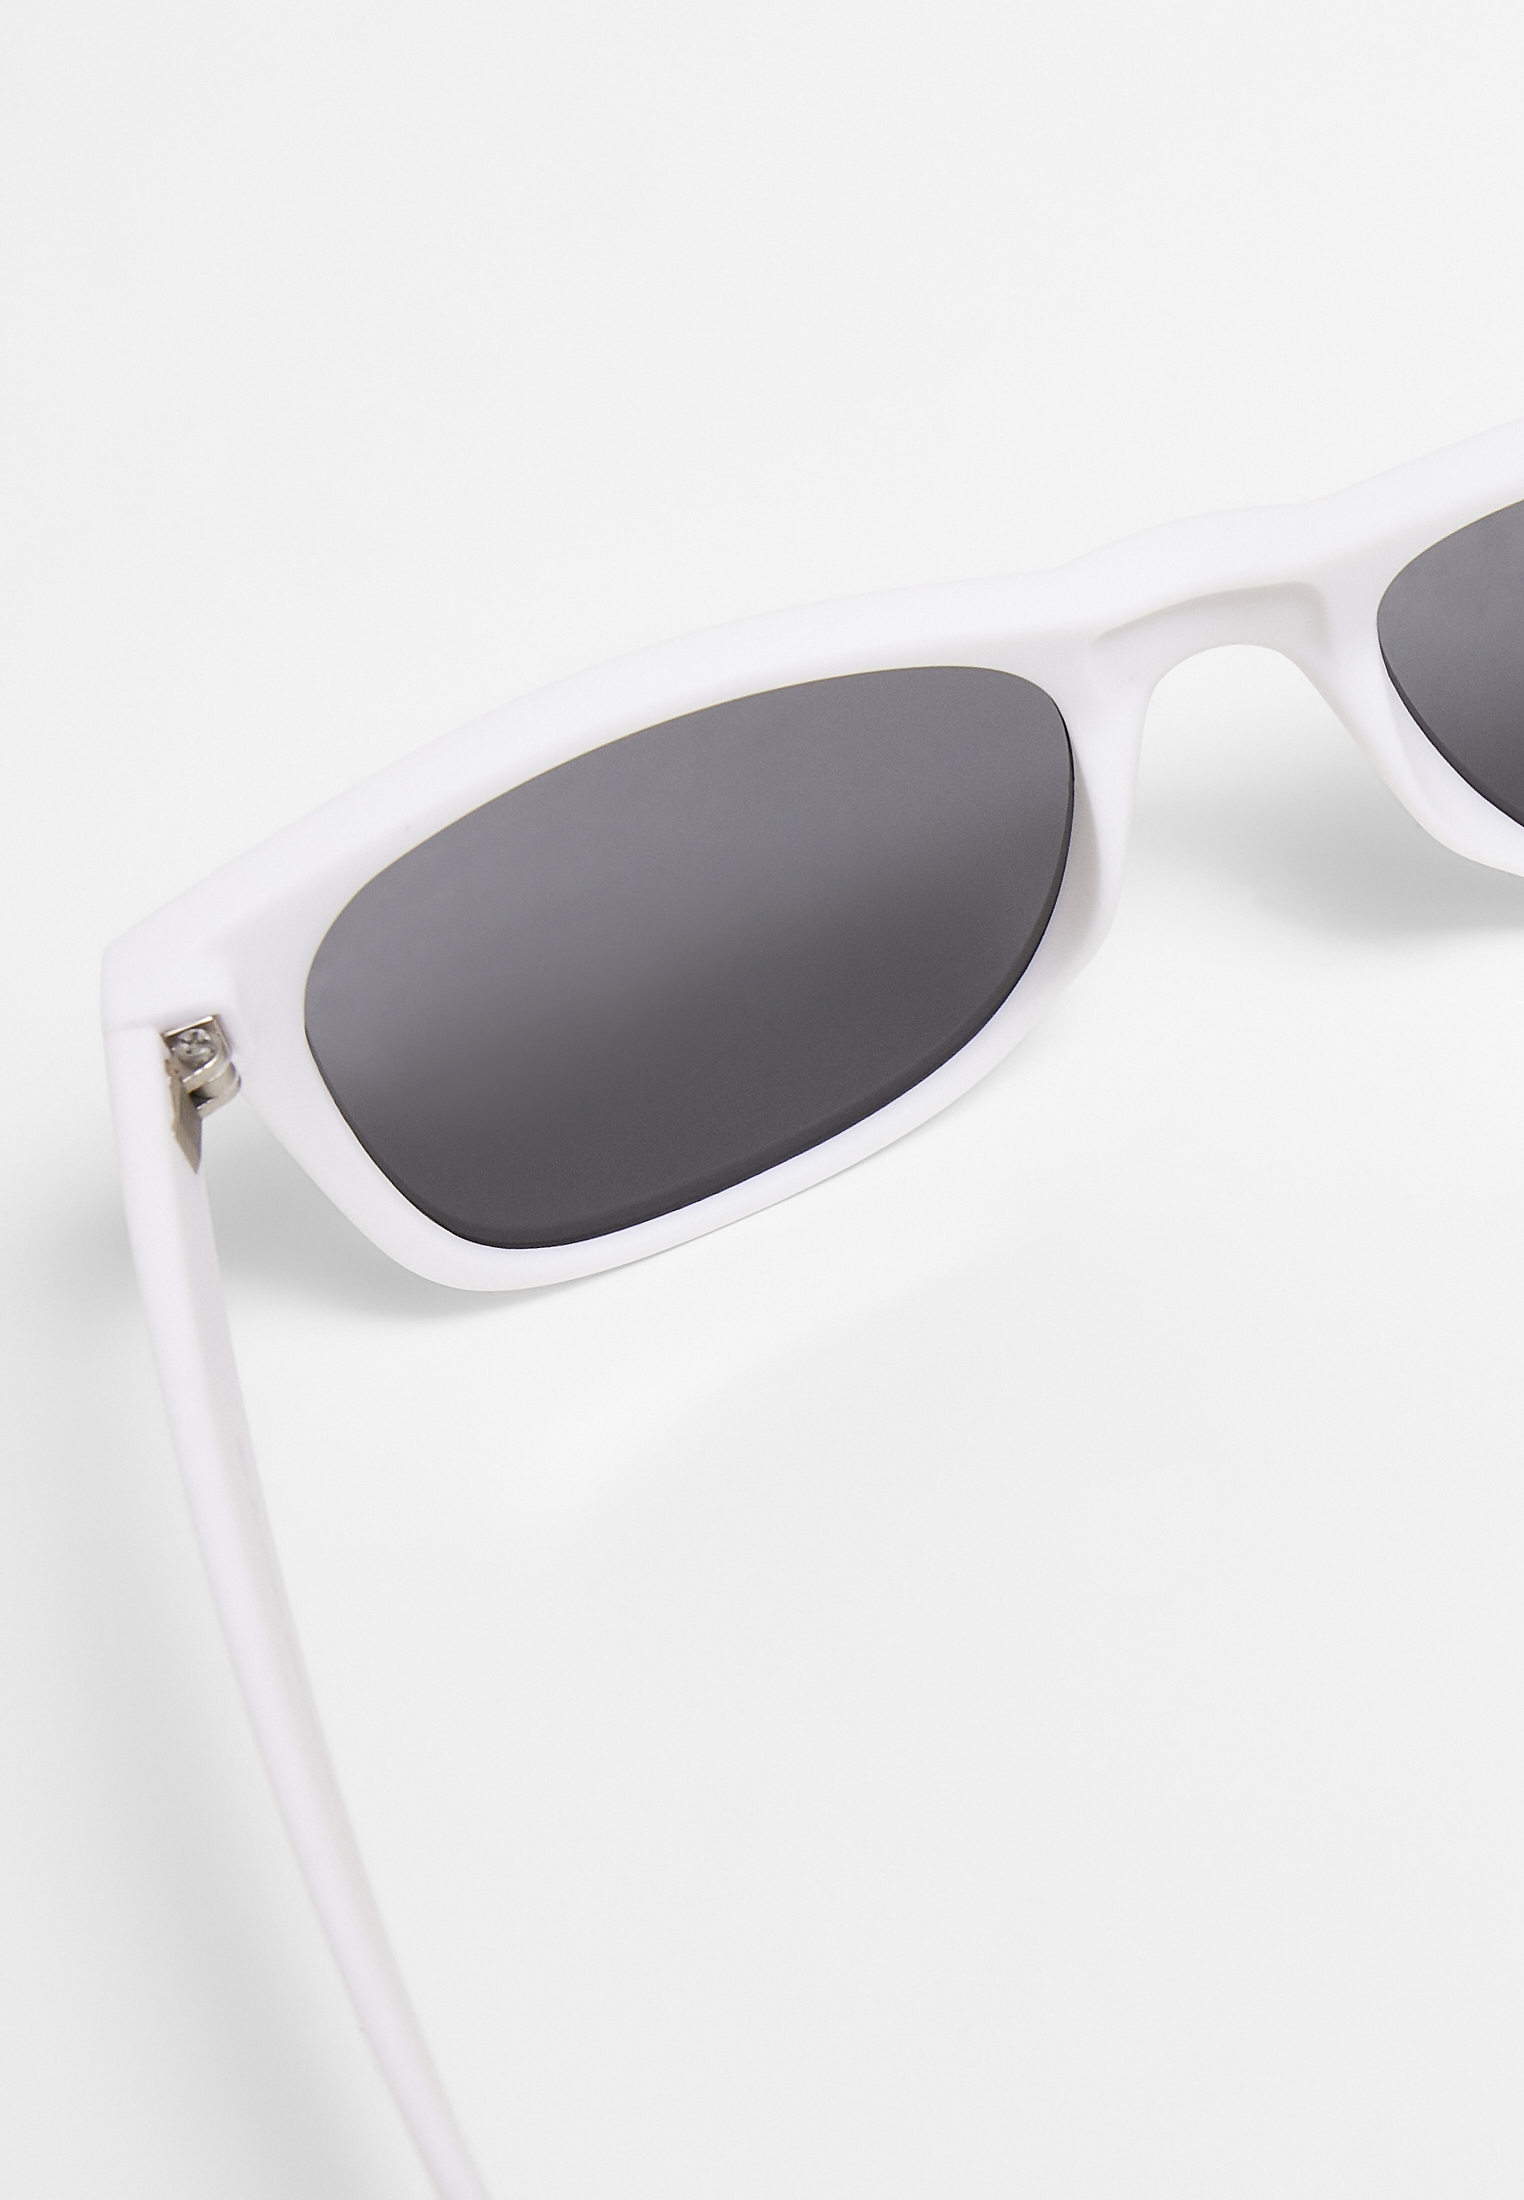 Sonnenbrillen Sunglasses Likoma UC in Farbe white